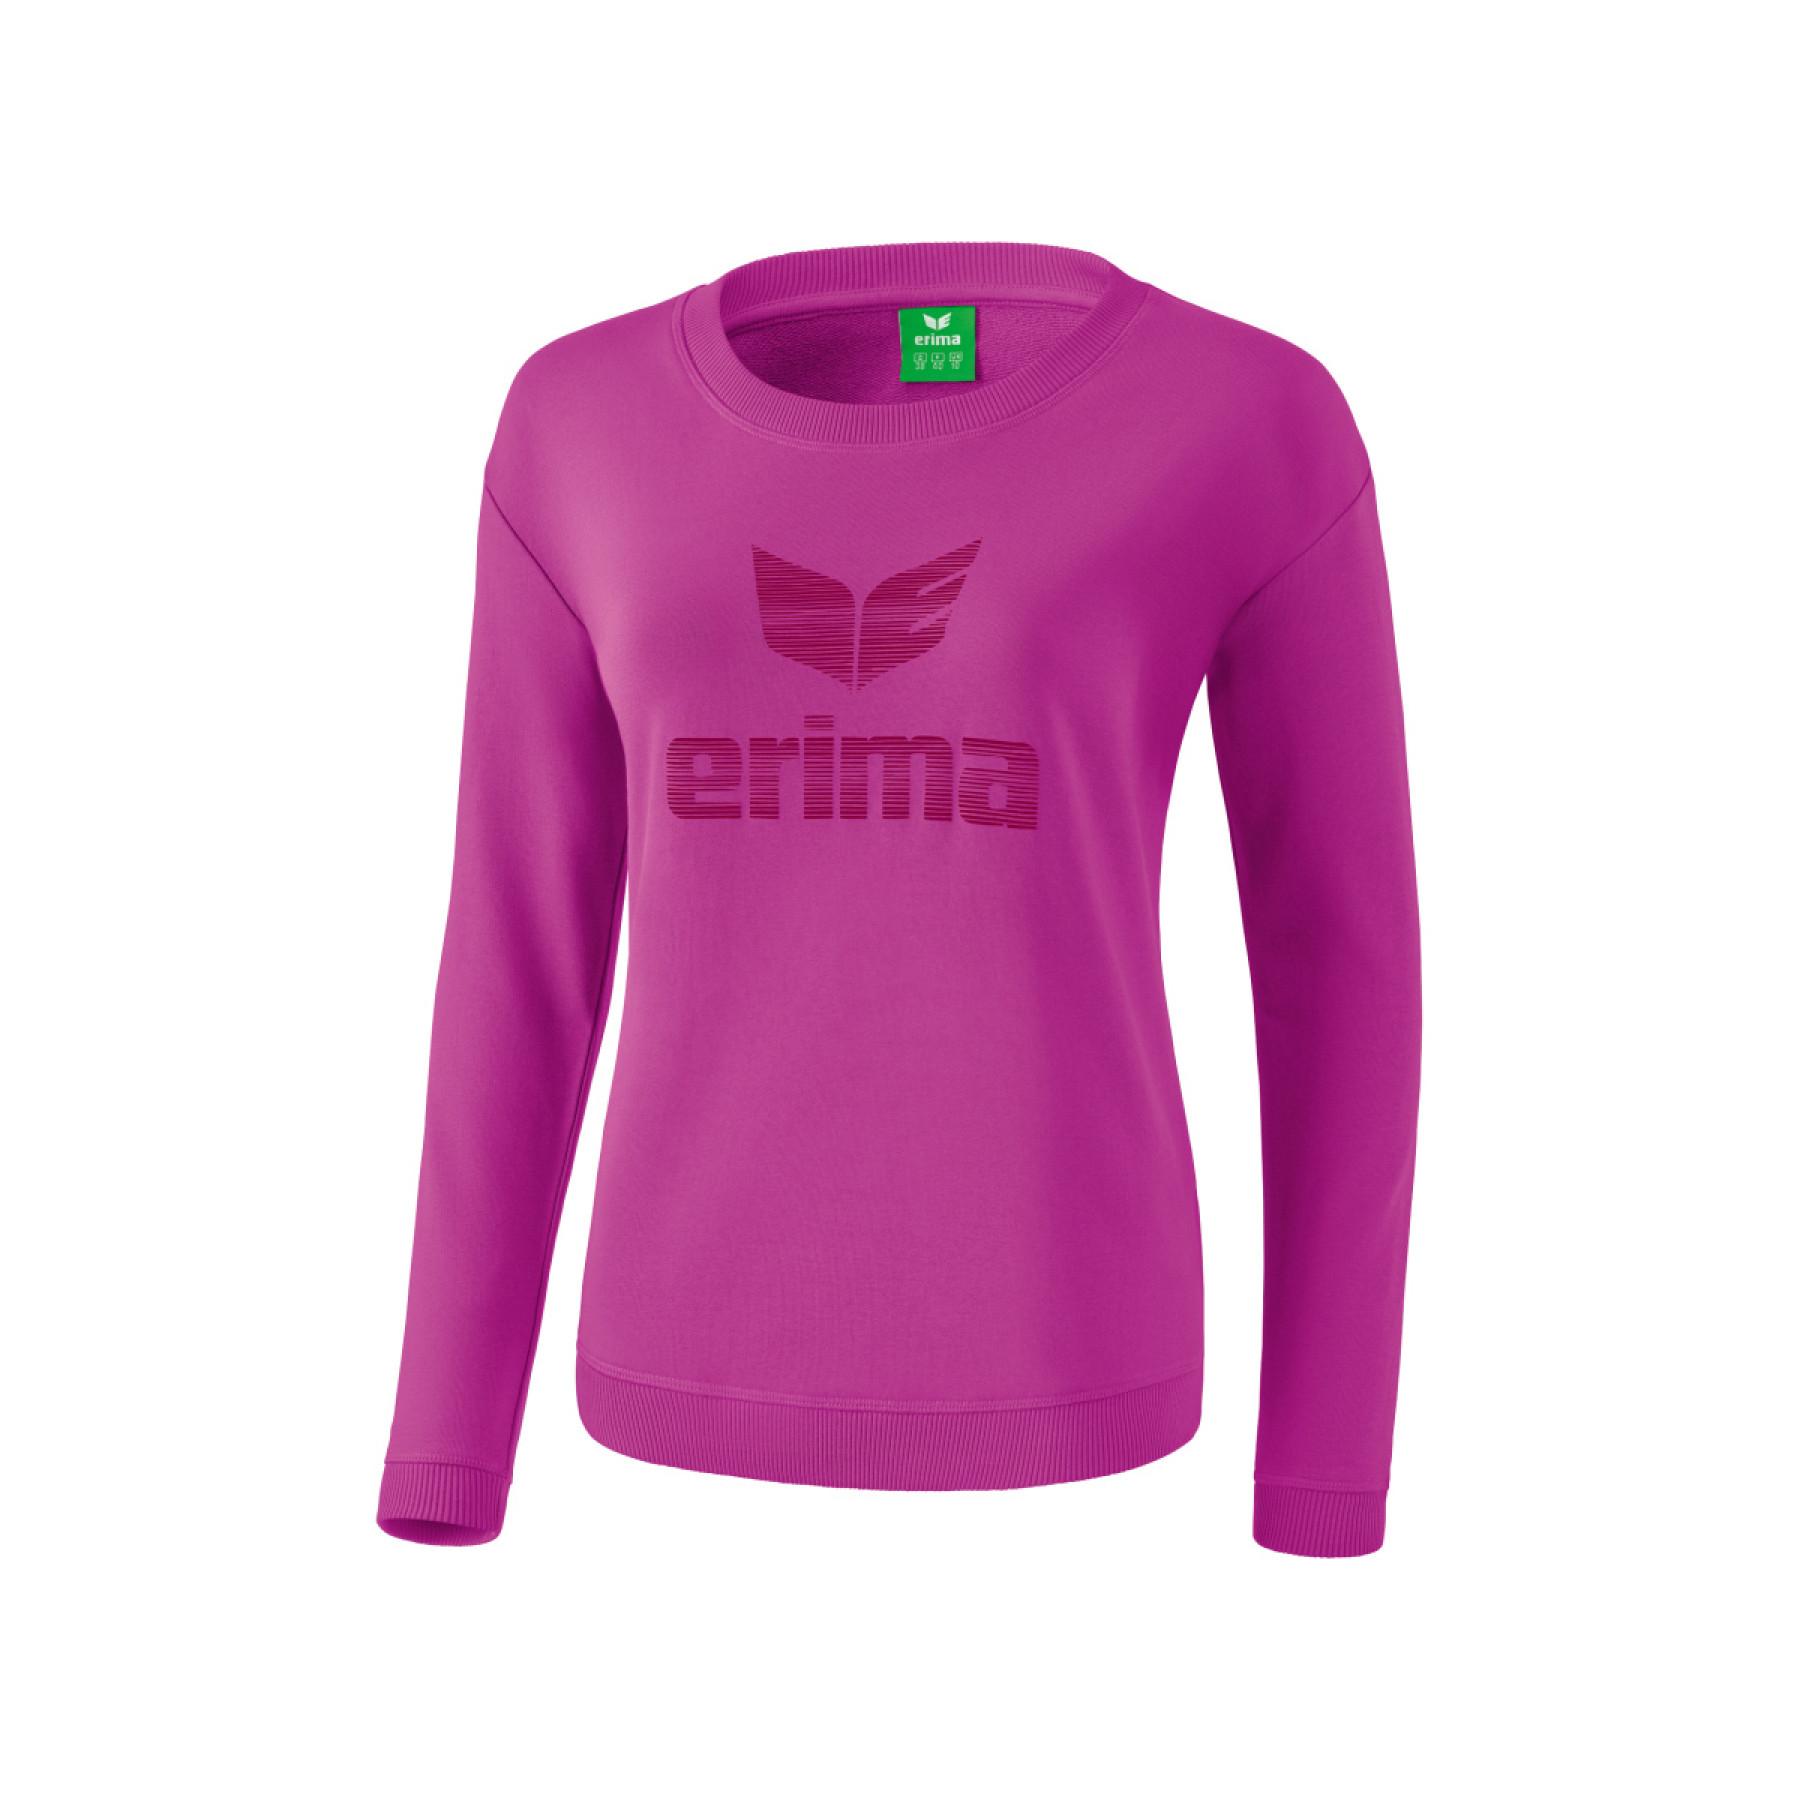 Sweat-shirt femme Erima essential à logo